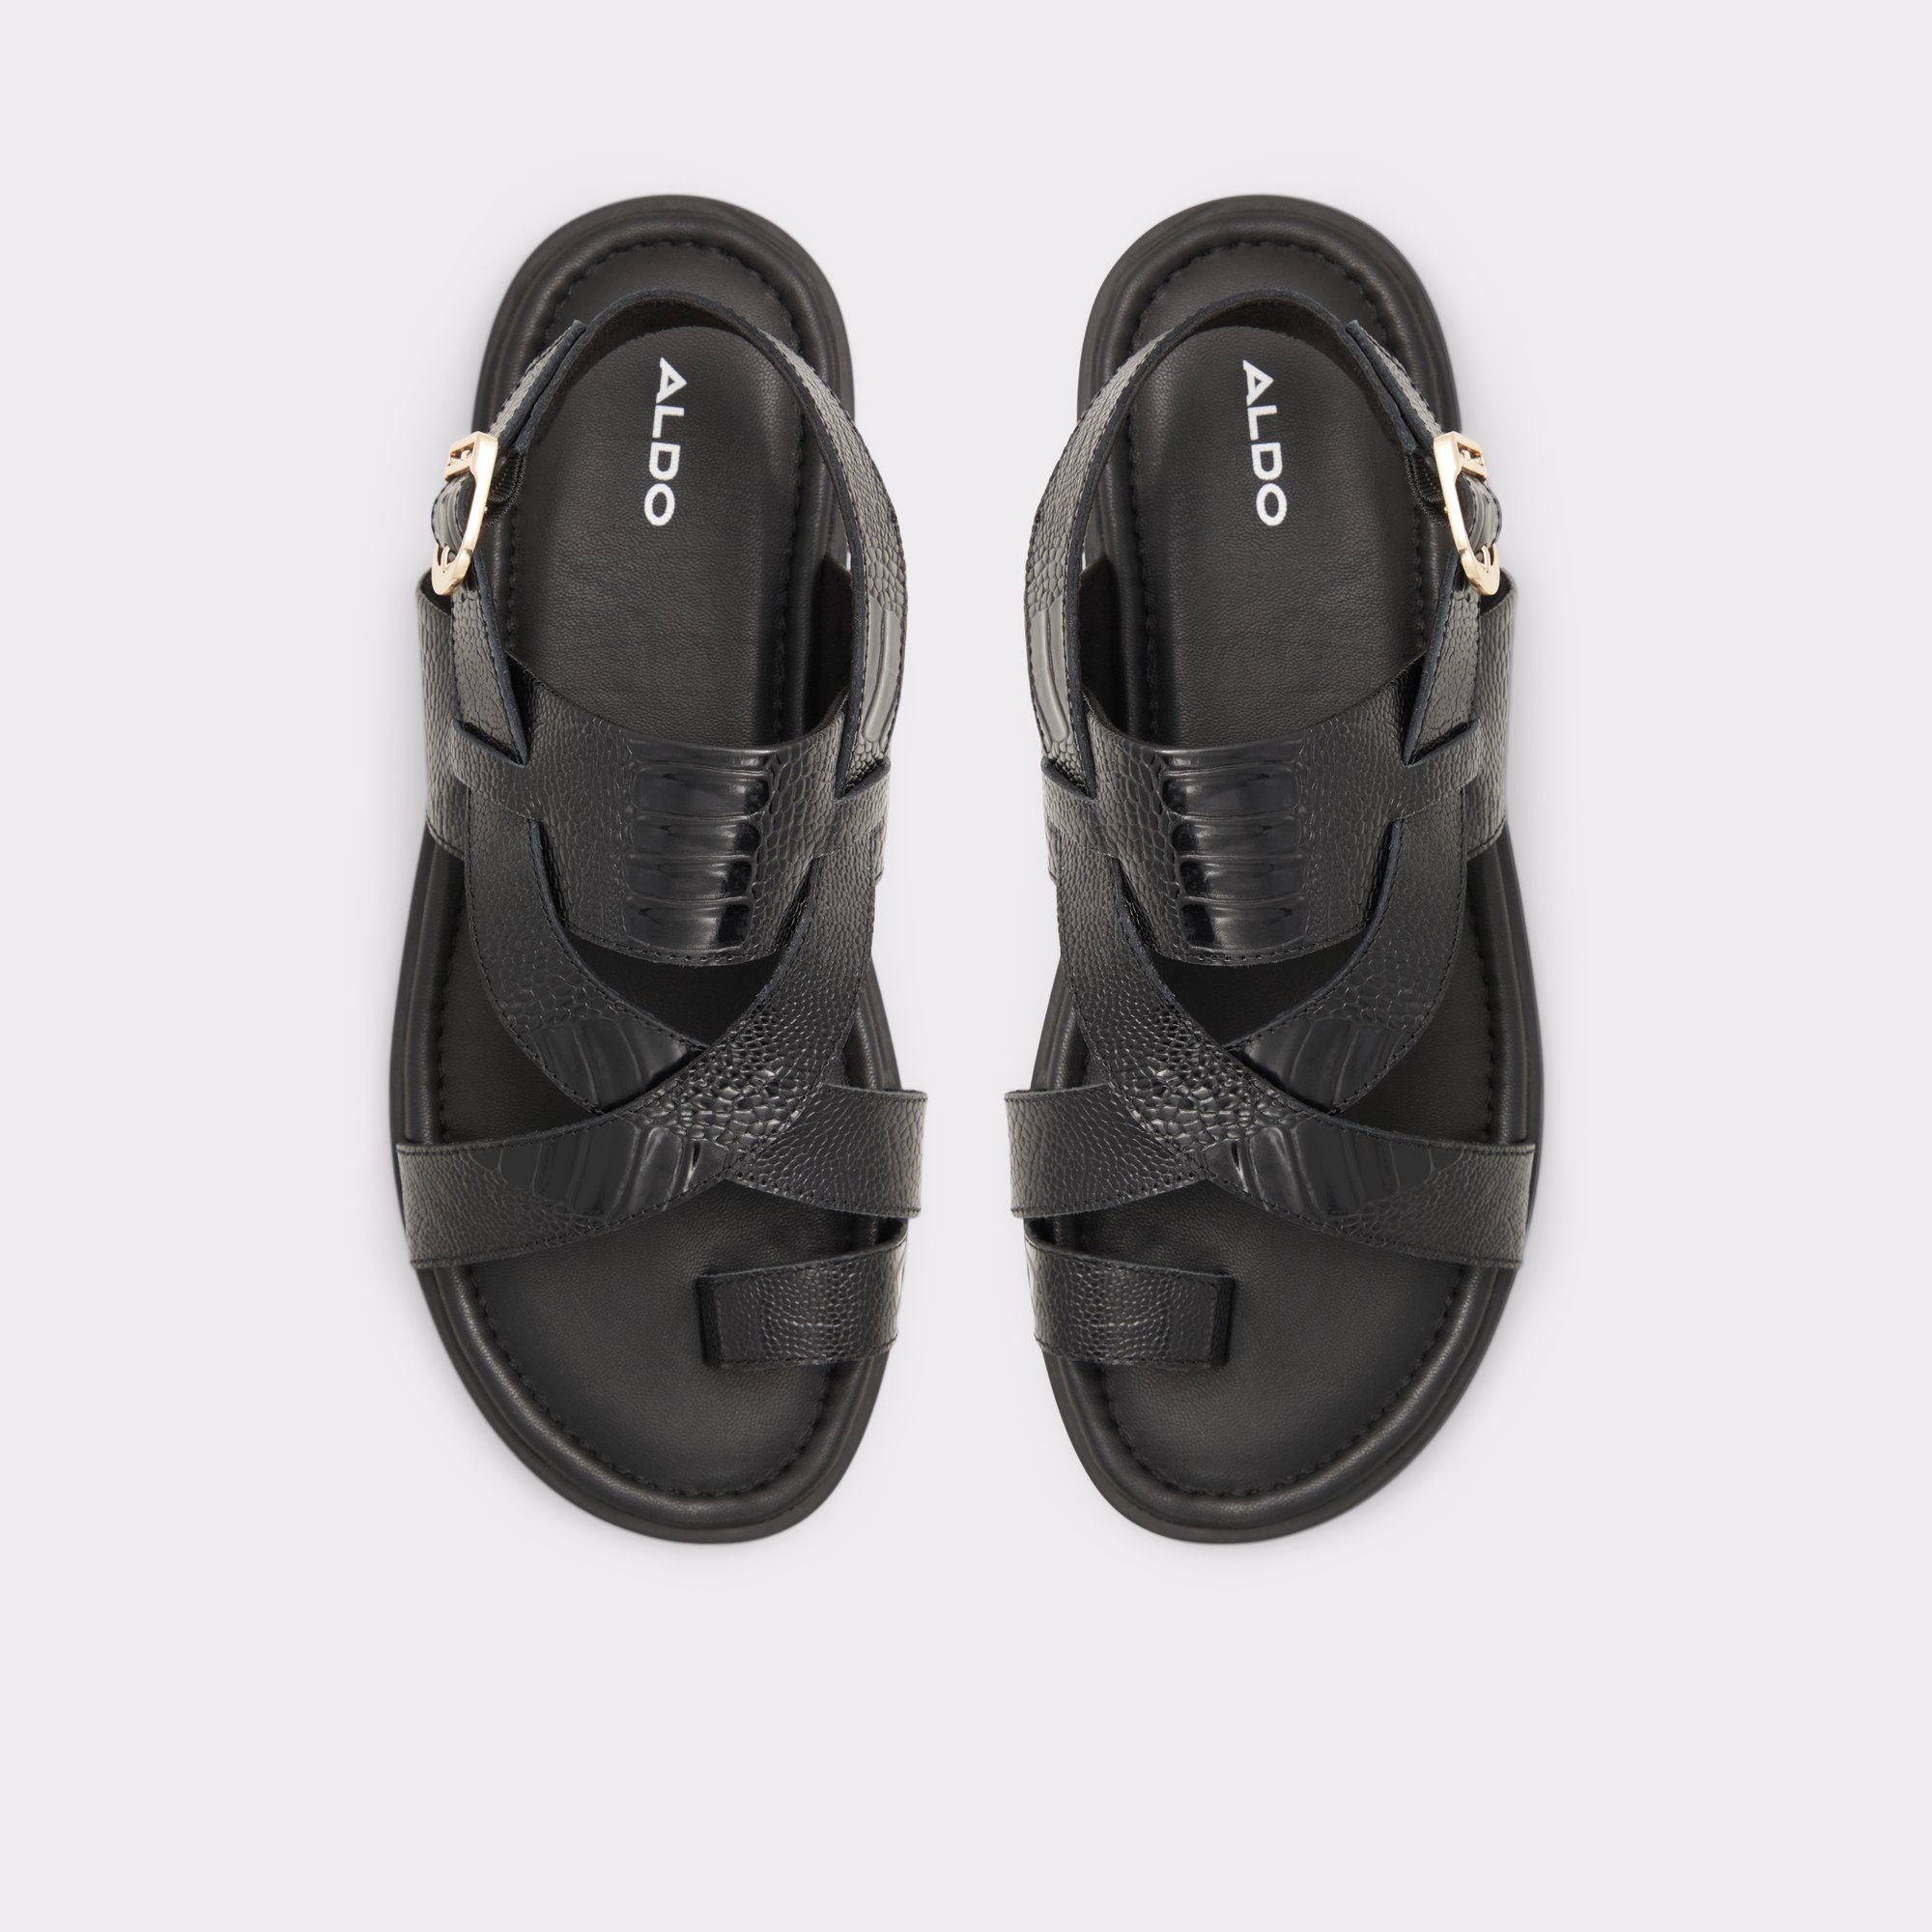 Zaino Black Men's Sandals & Slides | ALDO Canada